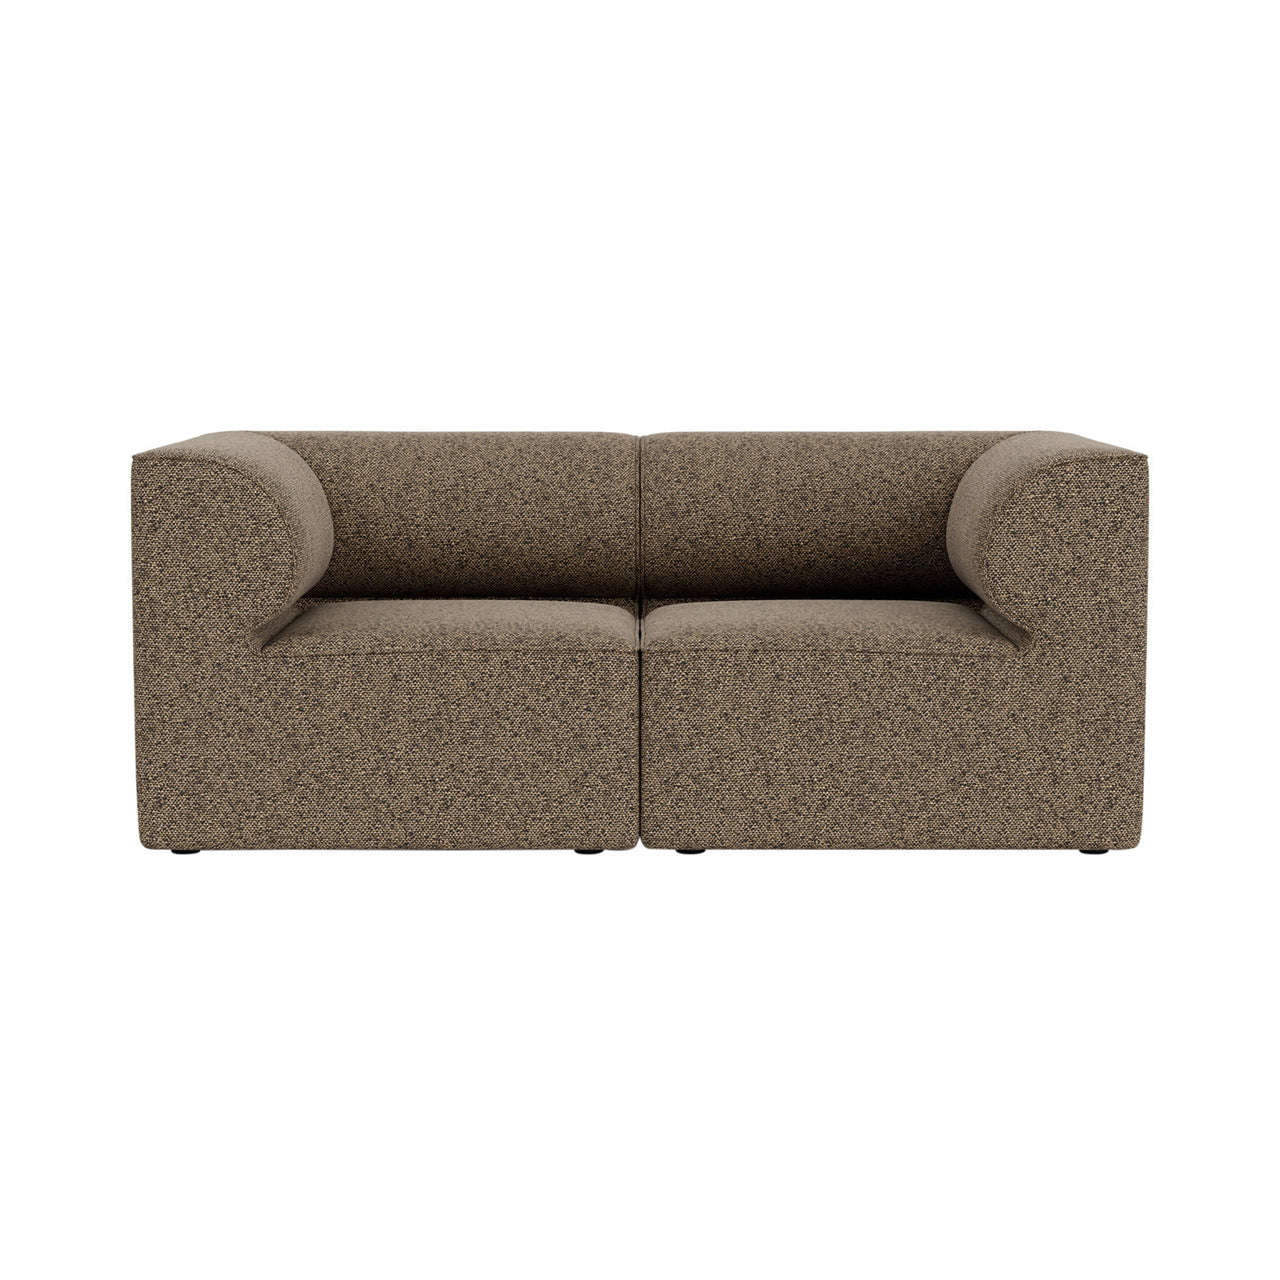 Eave 2 Seater Sofa: Large + Configuration + Safire 001